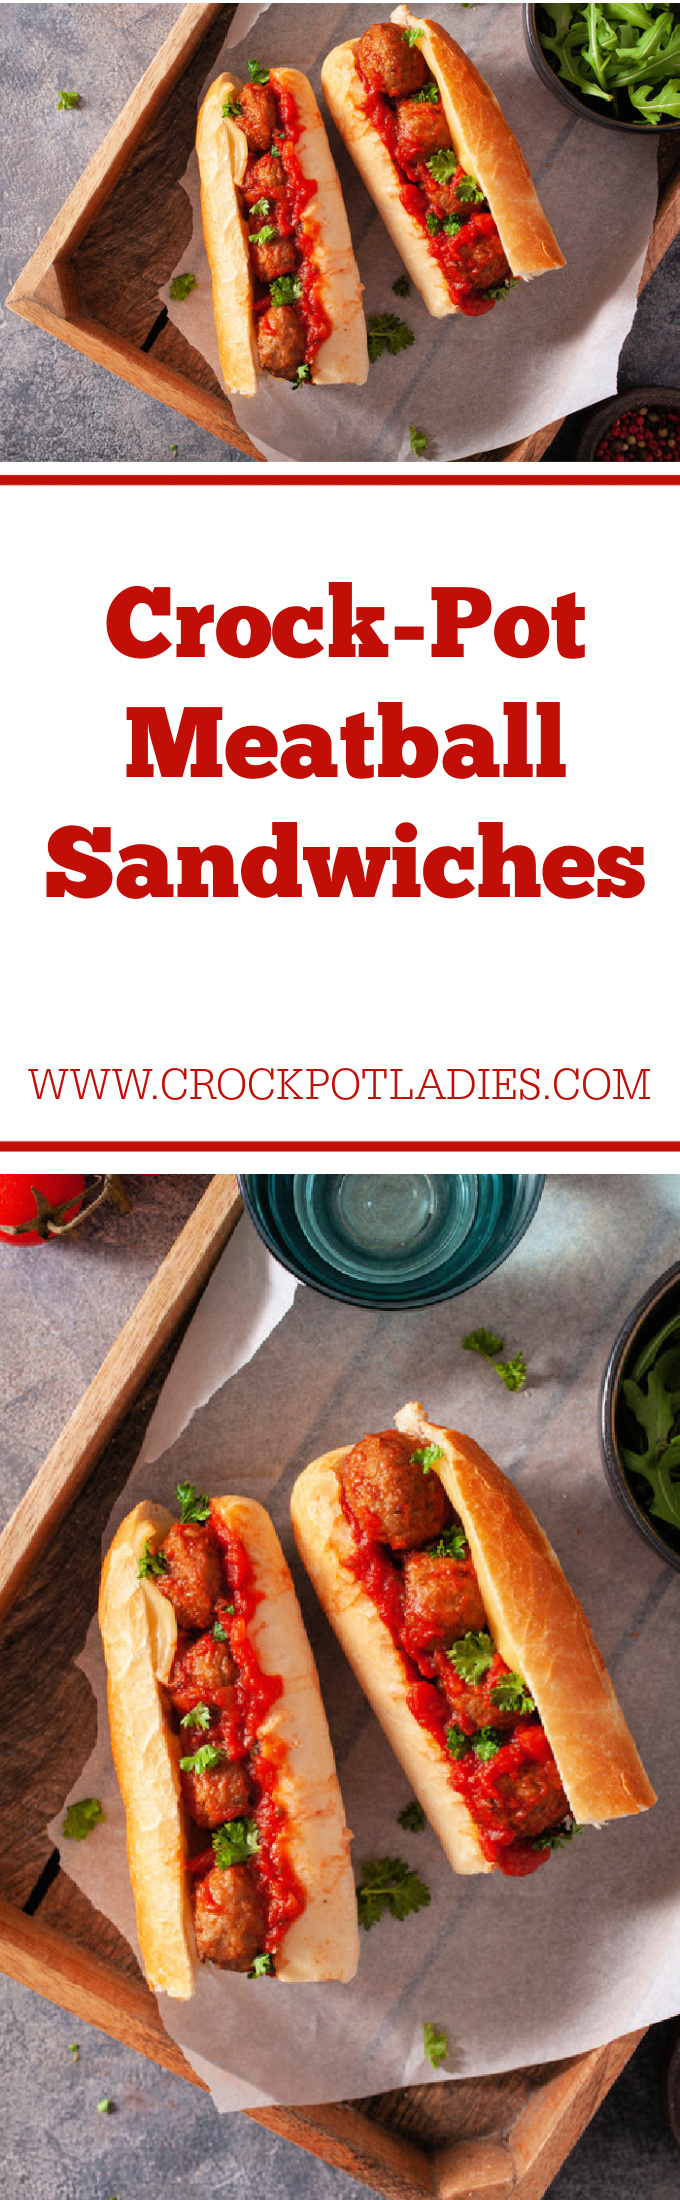 Crock-Pot Meatball Sandwiches